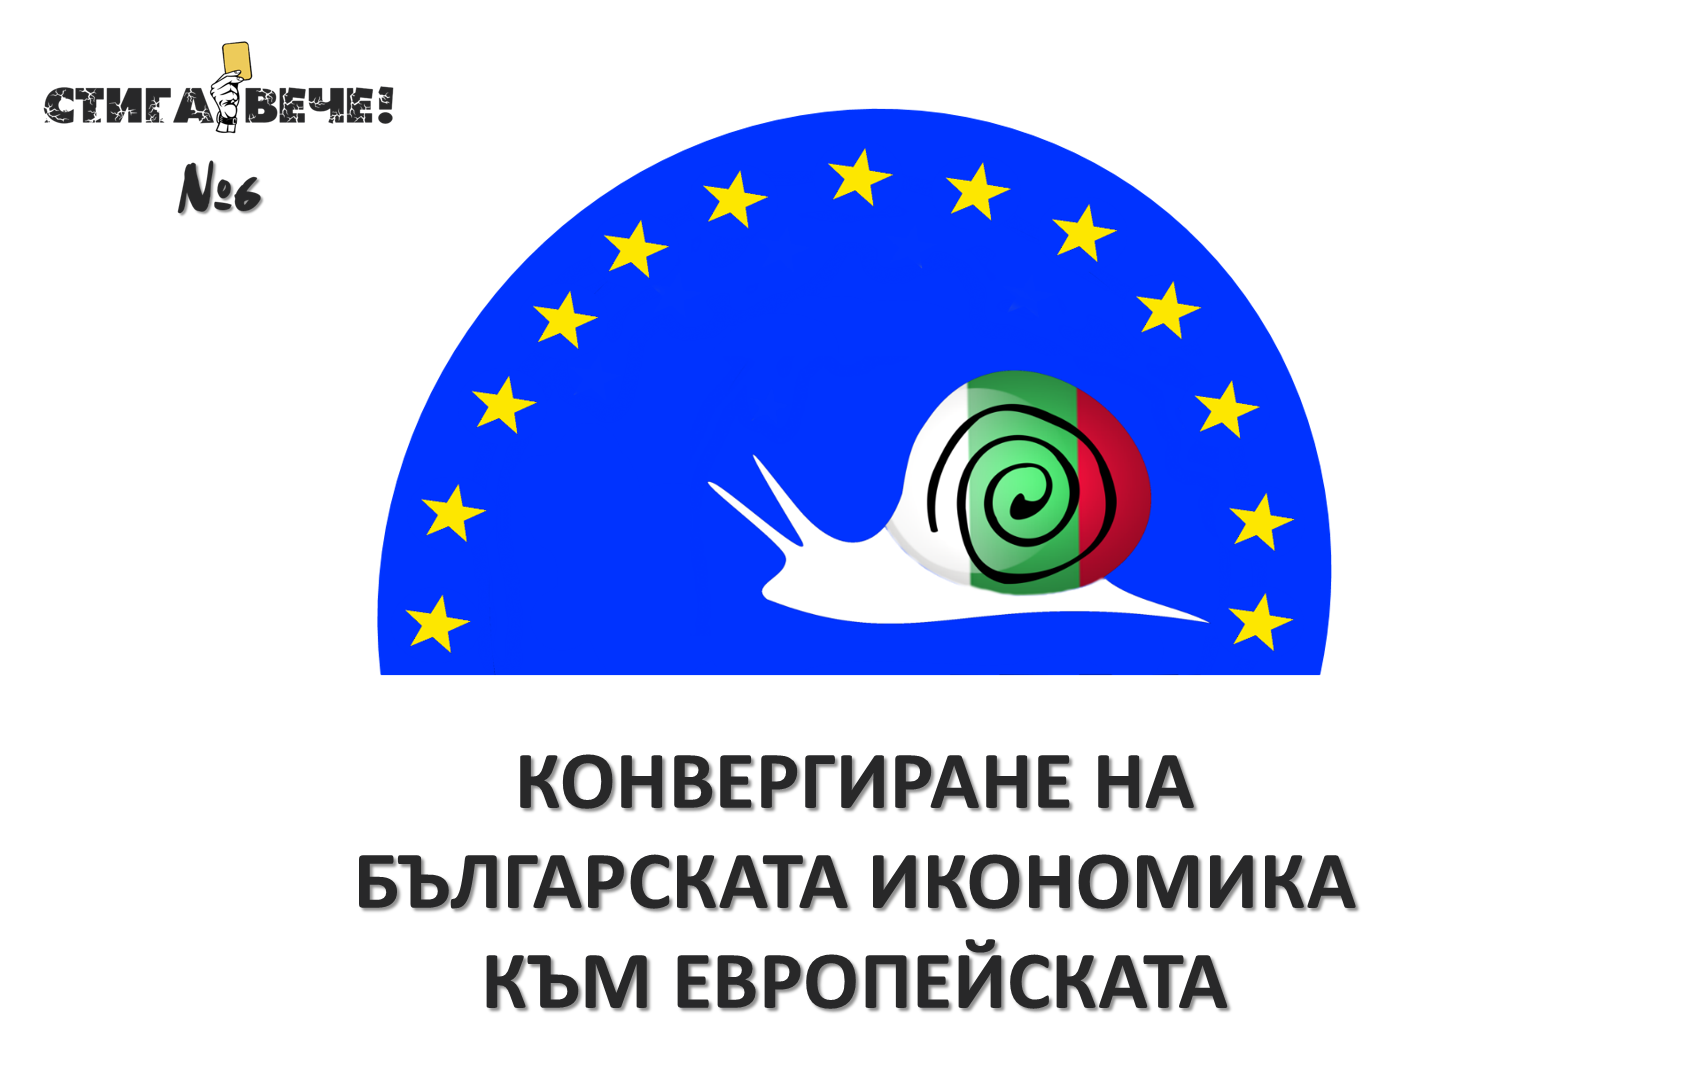 Конвергиране на българската икономика към европейската (2007-2015 г.)